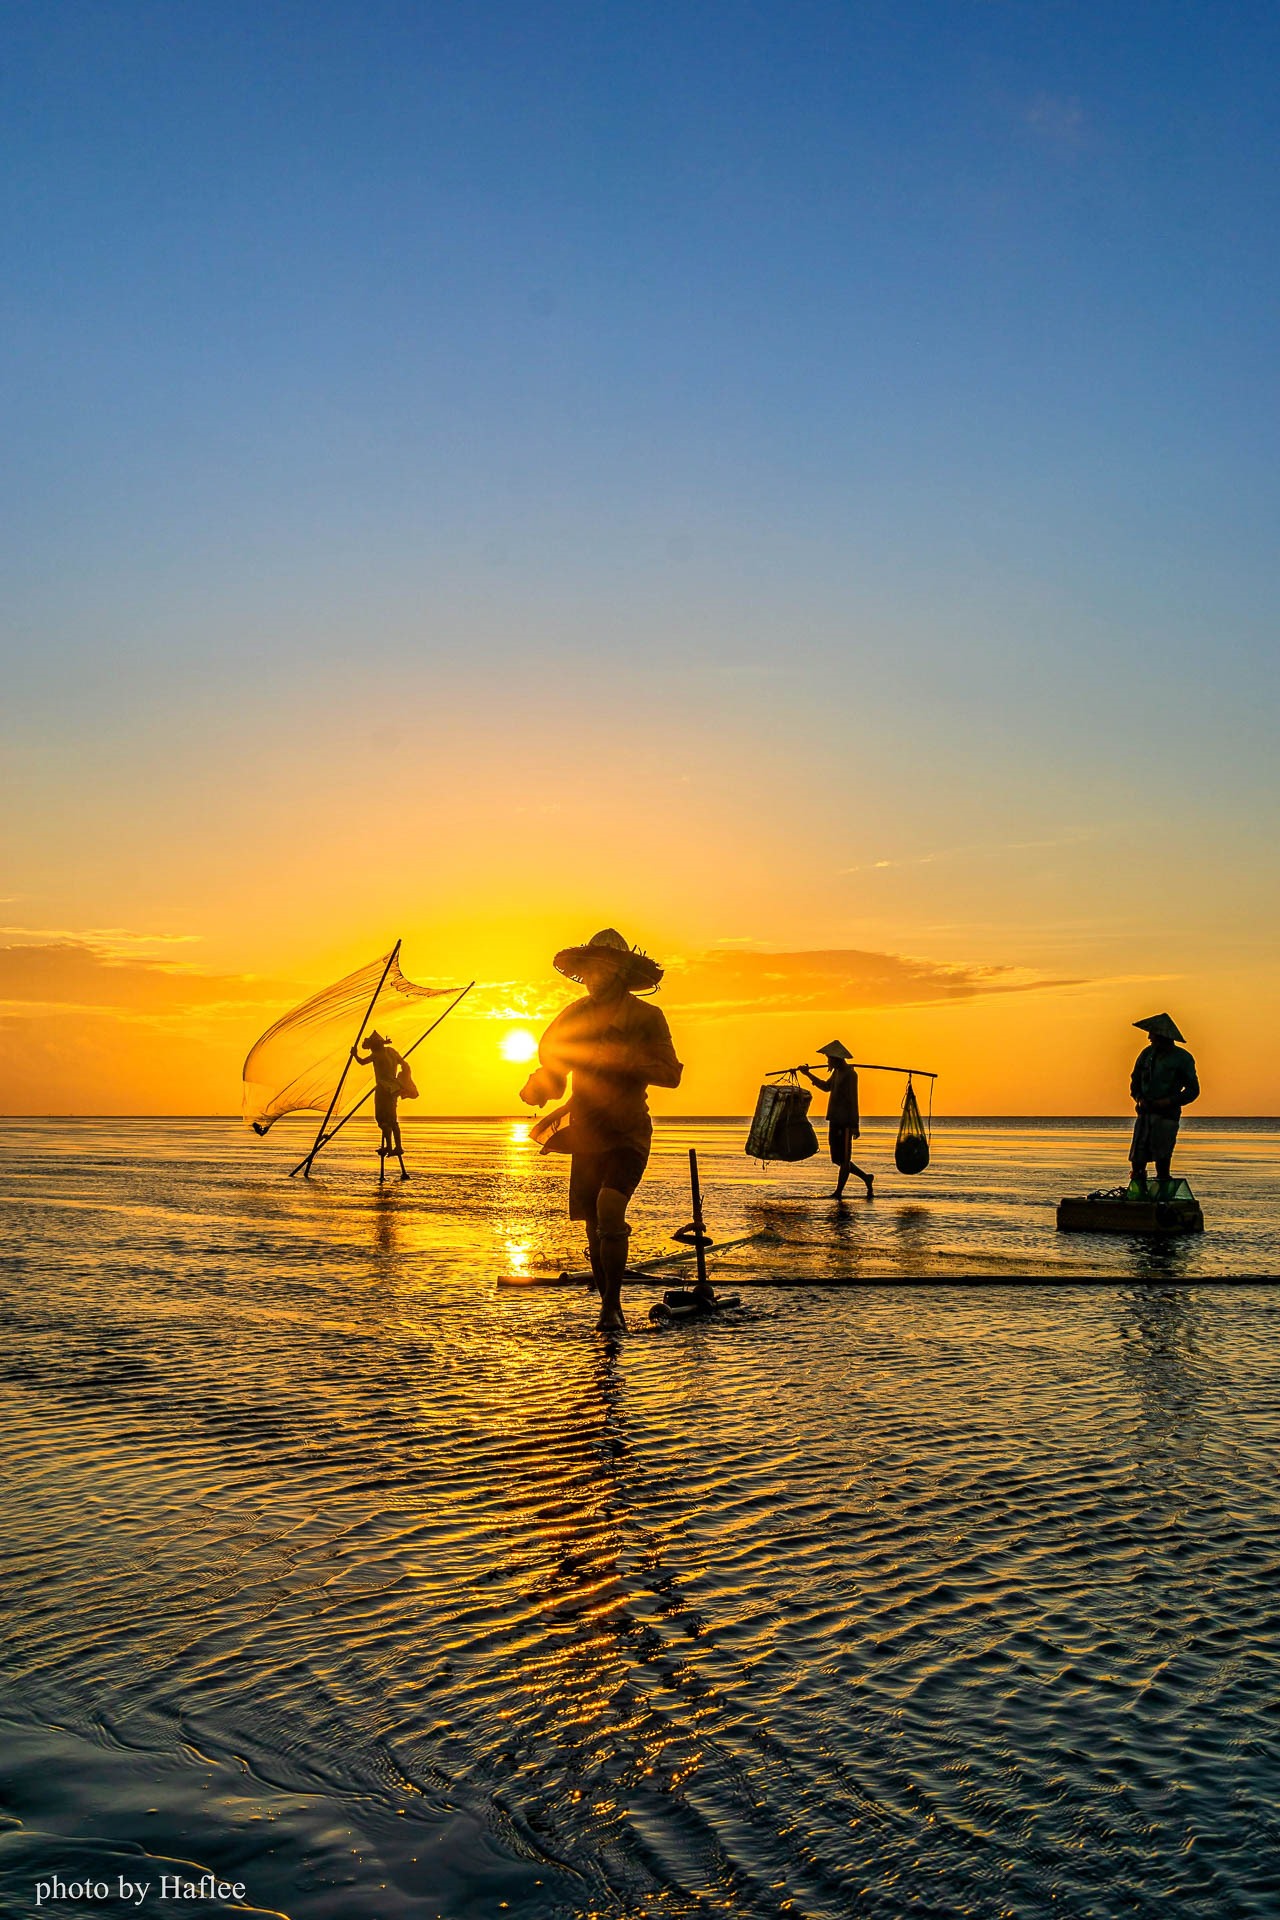 “Người dân tại đây chủ yếu đánh bắt theo phương pháp truyền thống để giữ gìn môi trường biển“, anh Hà cho biết. Ảnh: Haf Lee